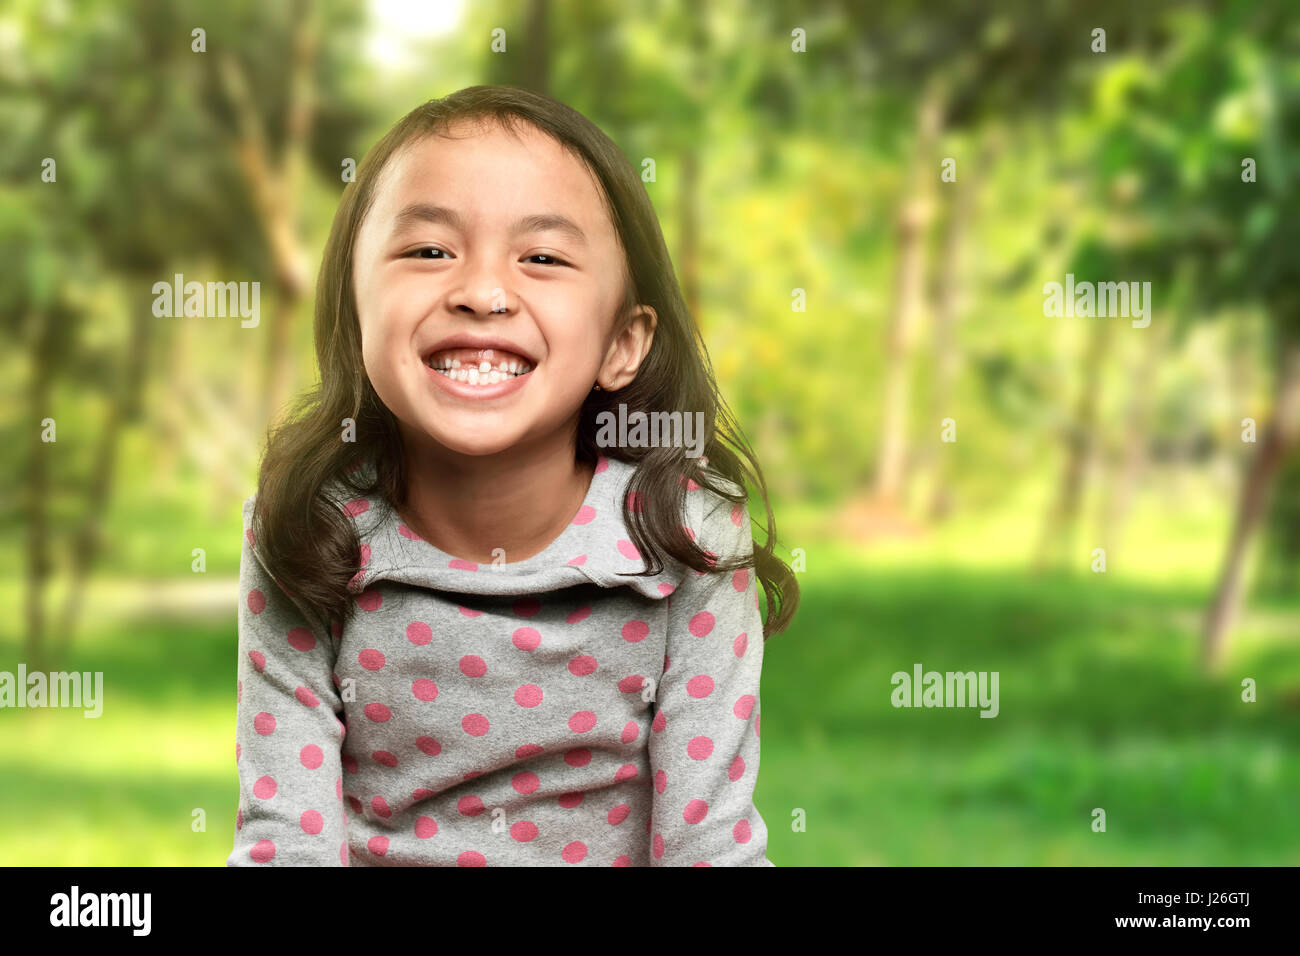 Drôle de sourire petite fille asiatique avec sa dent cassée dans le parc Banque D'Images